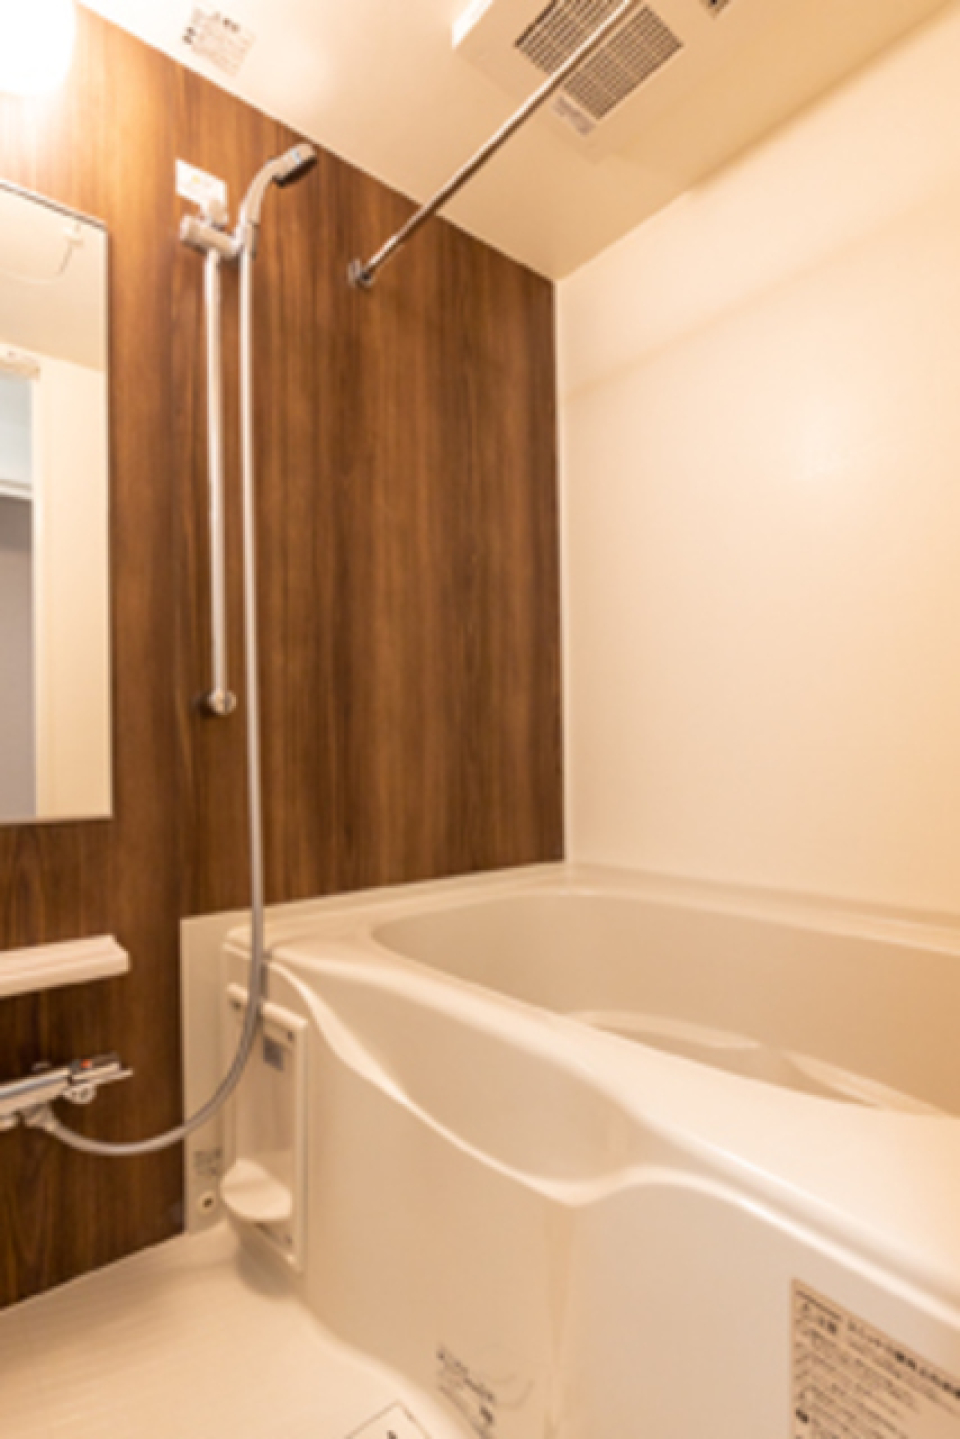 木目調のパネルで落ち着いた空間になっている浴室です。※写真は同タイプ住戸です。